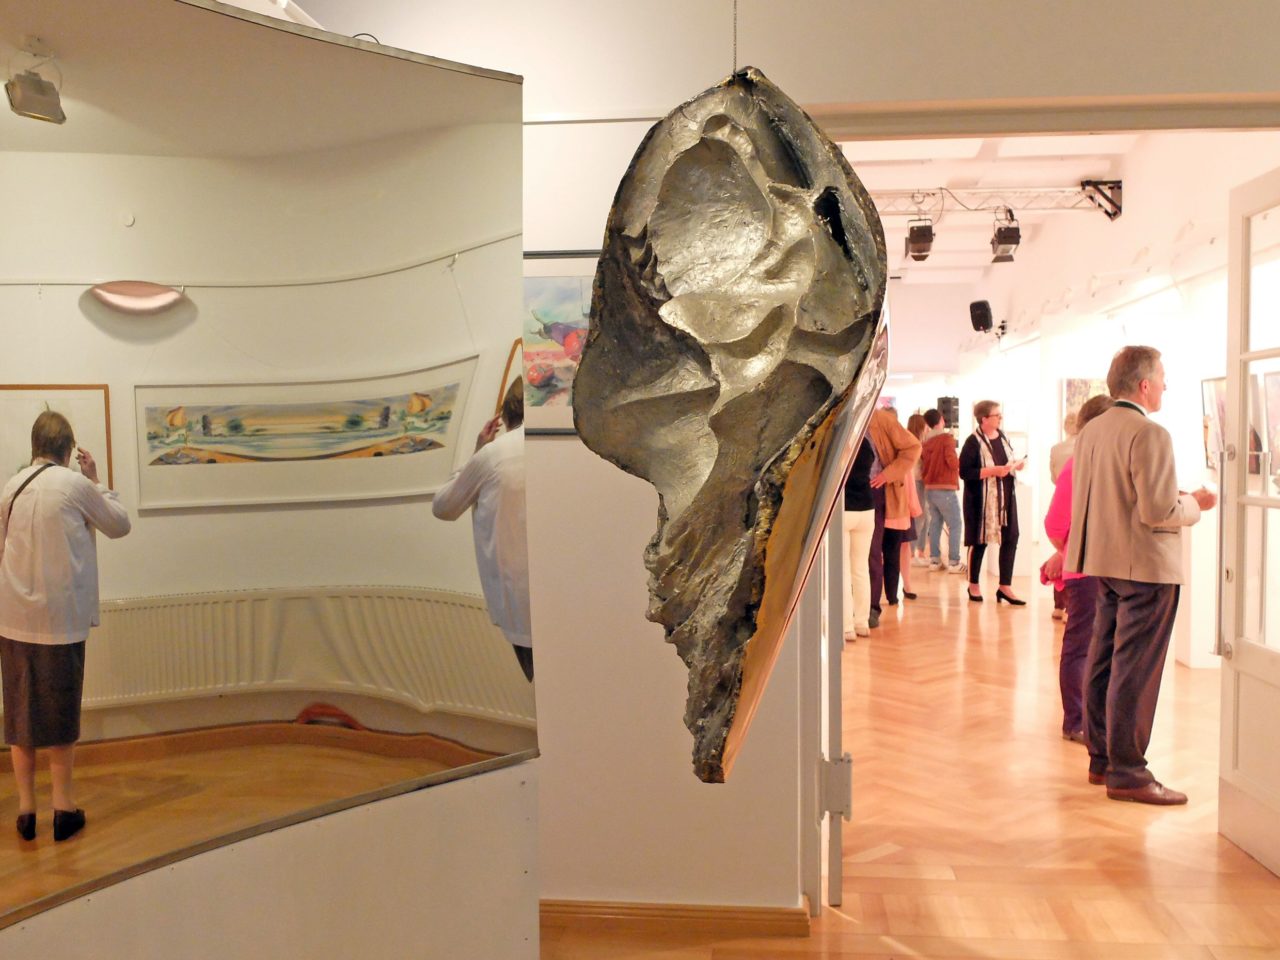 69. Tegernseer Kunstausstellung im E-Werk - Antonia Leitners Spiegelinstallation spielt mit der Wahrnehmung - und lädt zum Austausch ein